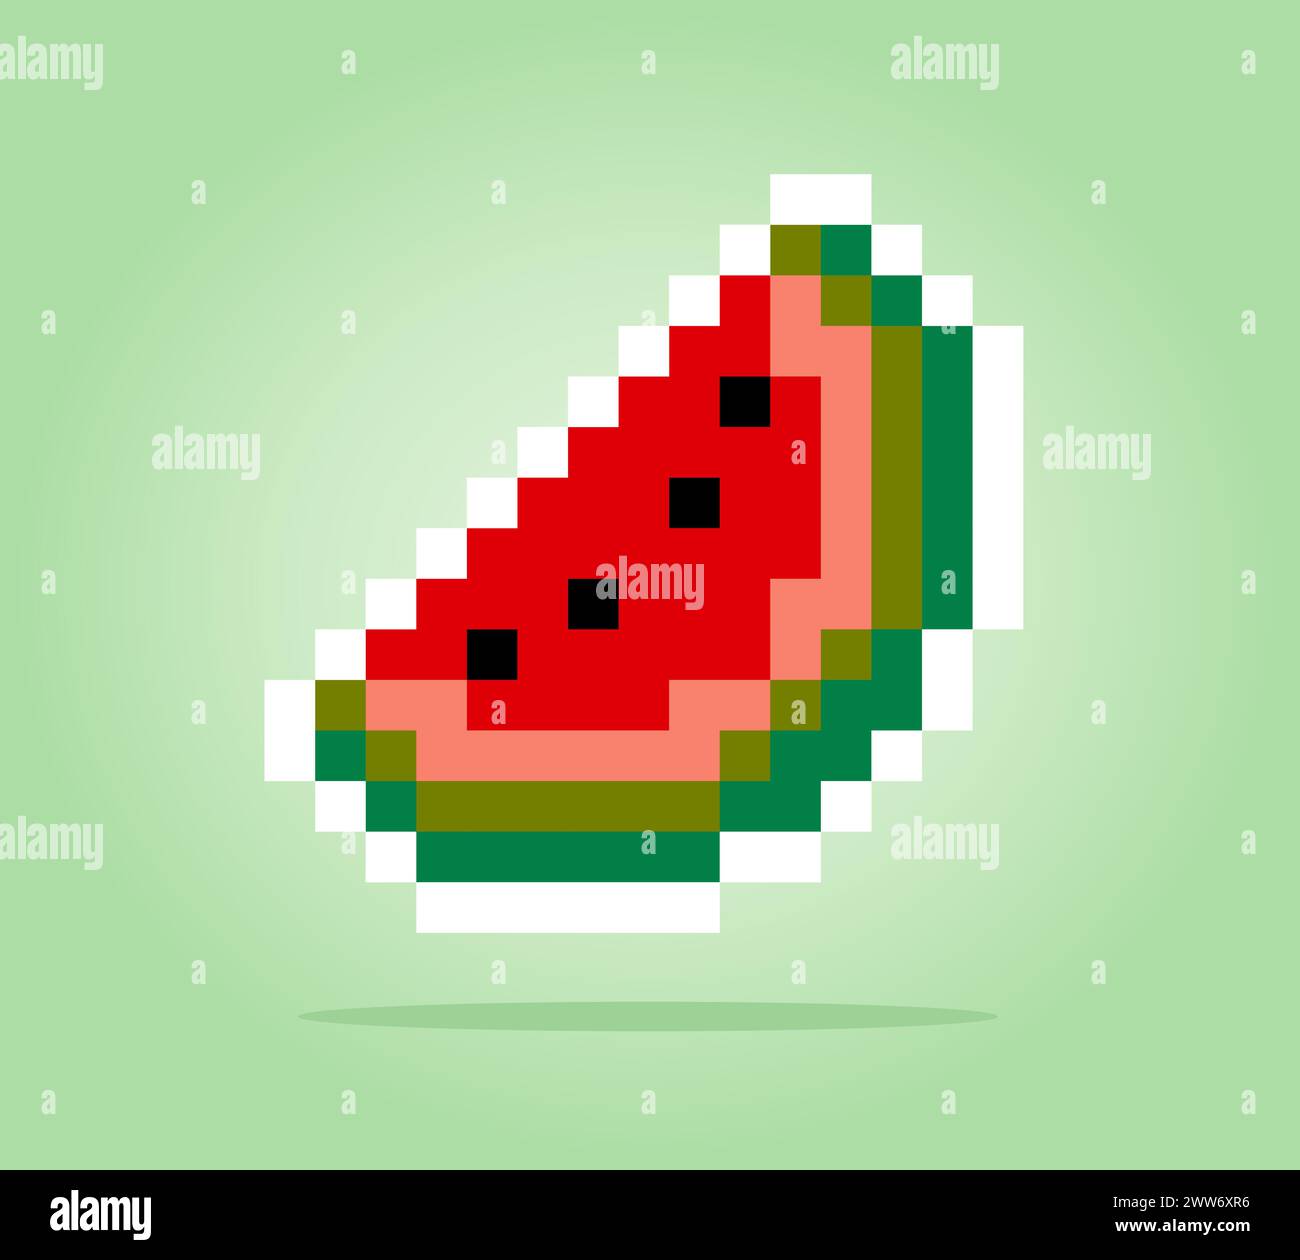 8-Bit-Pixel-Schicht-Wassermelone. Fruchtpixel für Spielsymbole. Abbildung Vektor-Kreuzstichmuster Stock Vektor